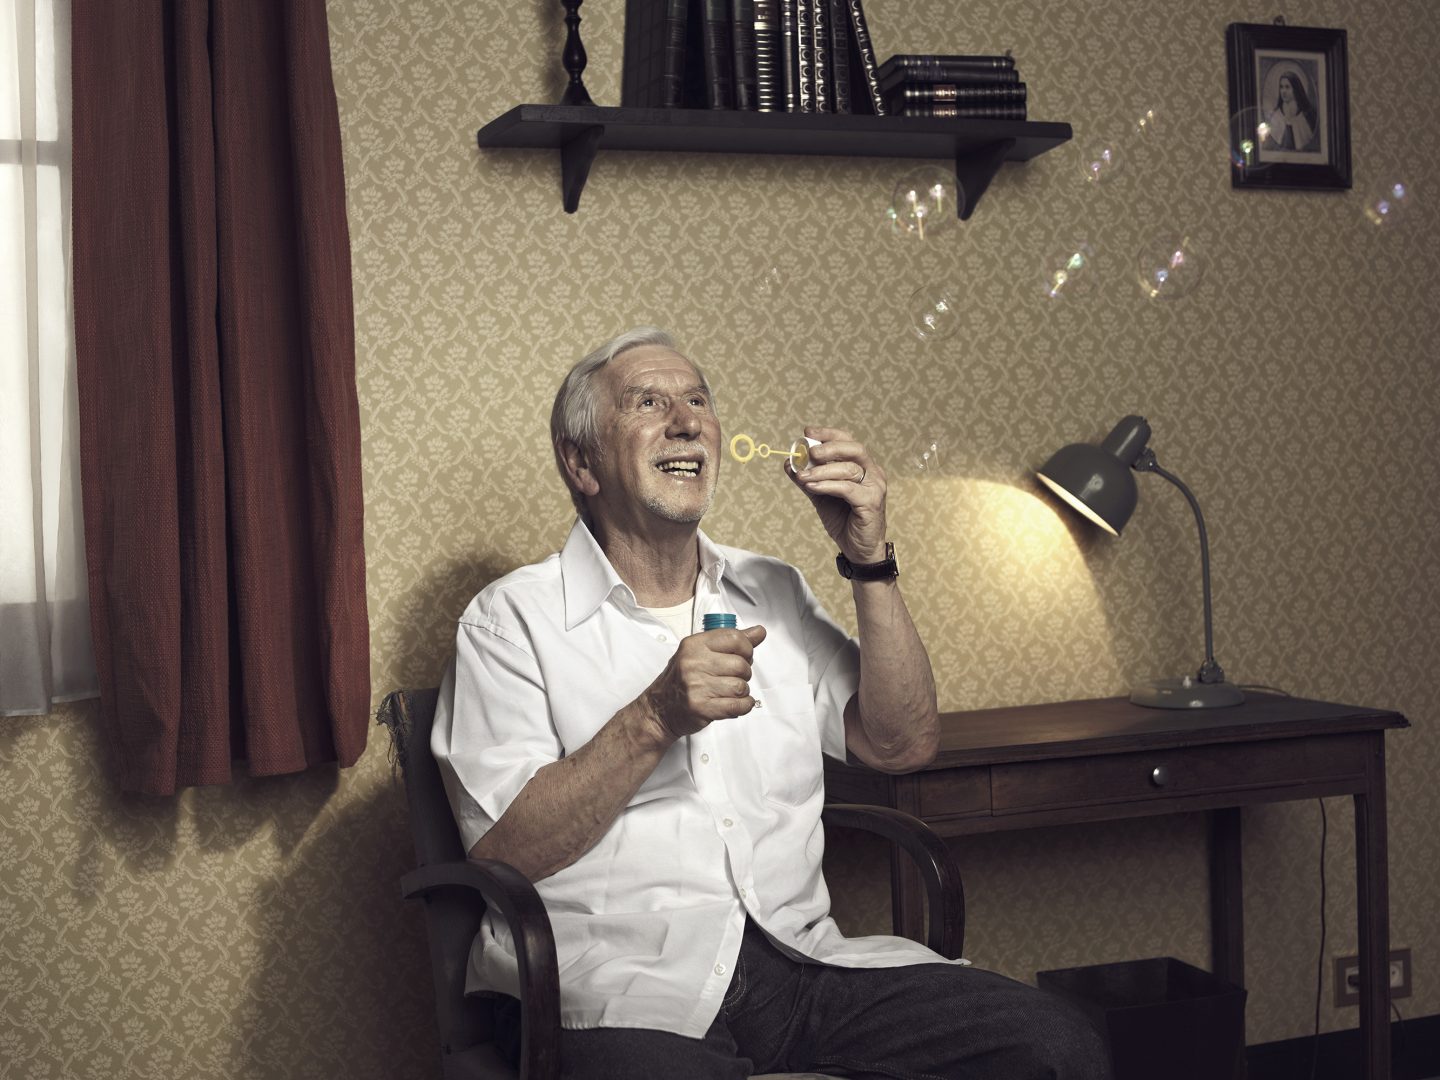 Old man making soap bubbles in room 42 by Stefan Rappo